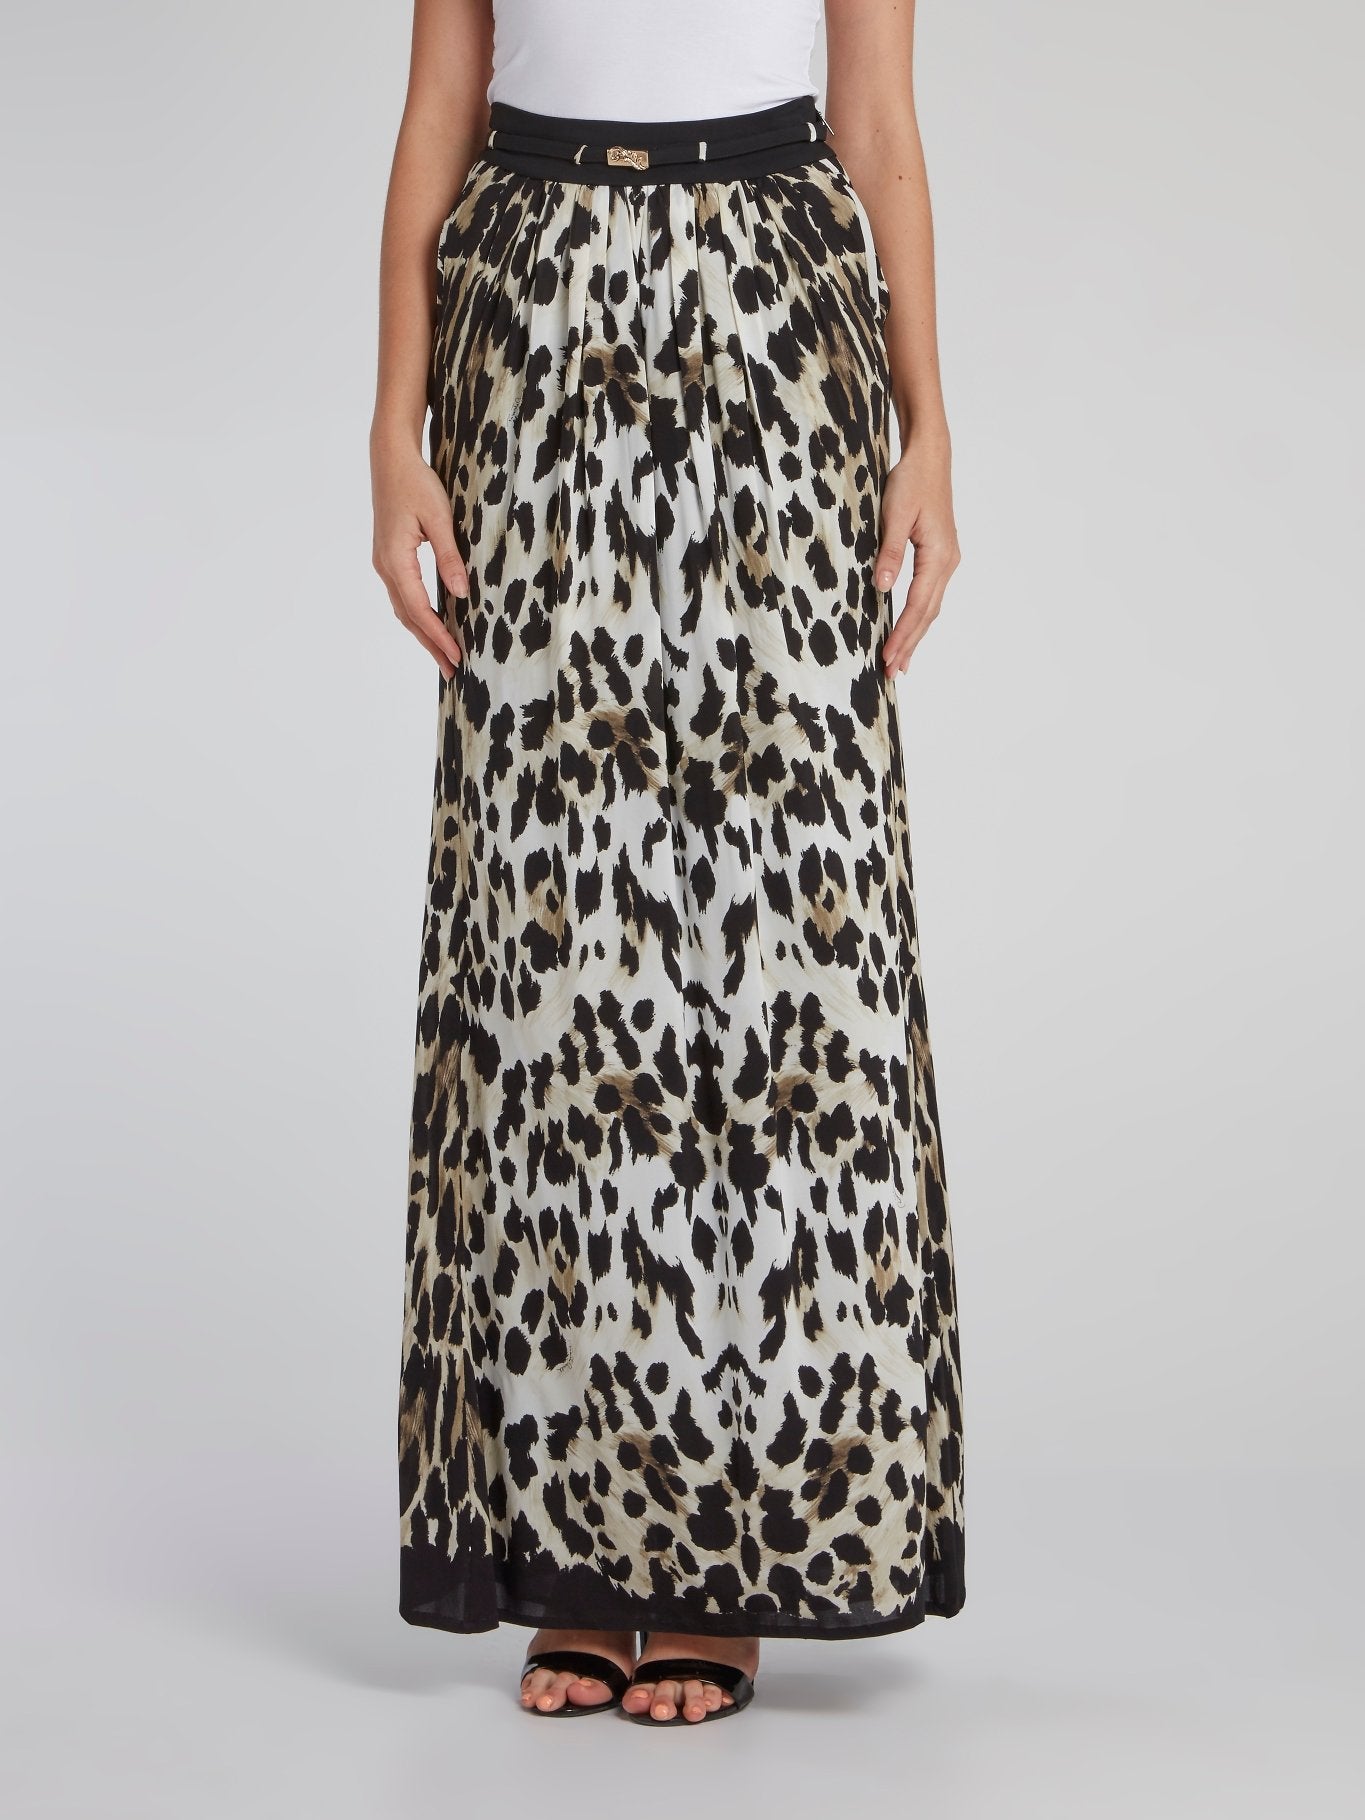 Присборенная юбка-макси с леопардовым принтом